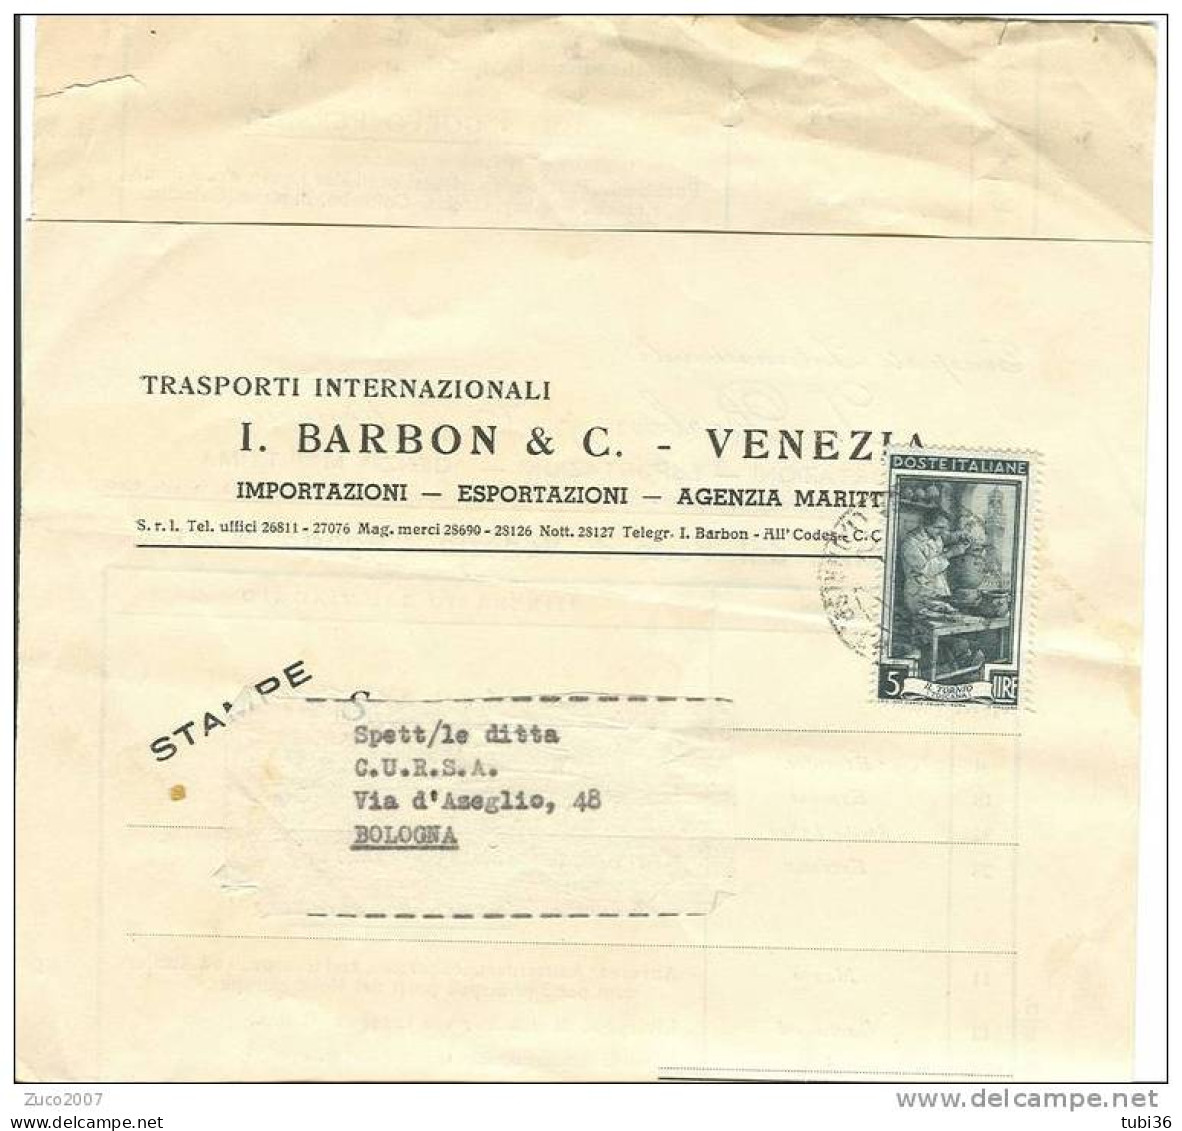 BARBON E C. - VENEZIA - TRASPORTI INTERNAZIONALI - CALENDARIO PARTENZE DAL PORTO DI VENEZIA  1952. - Mondo